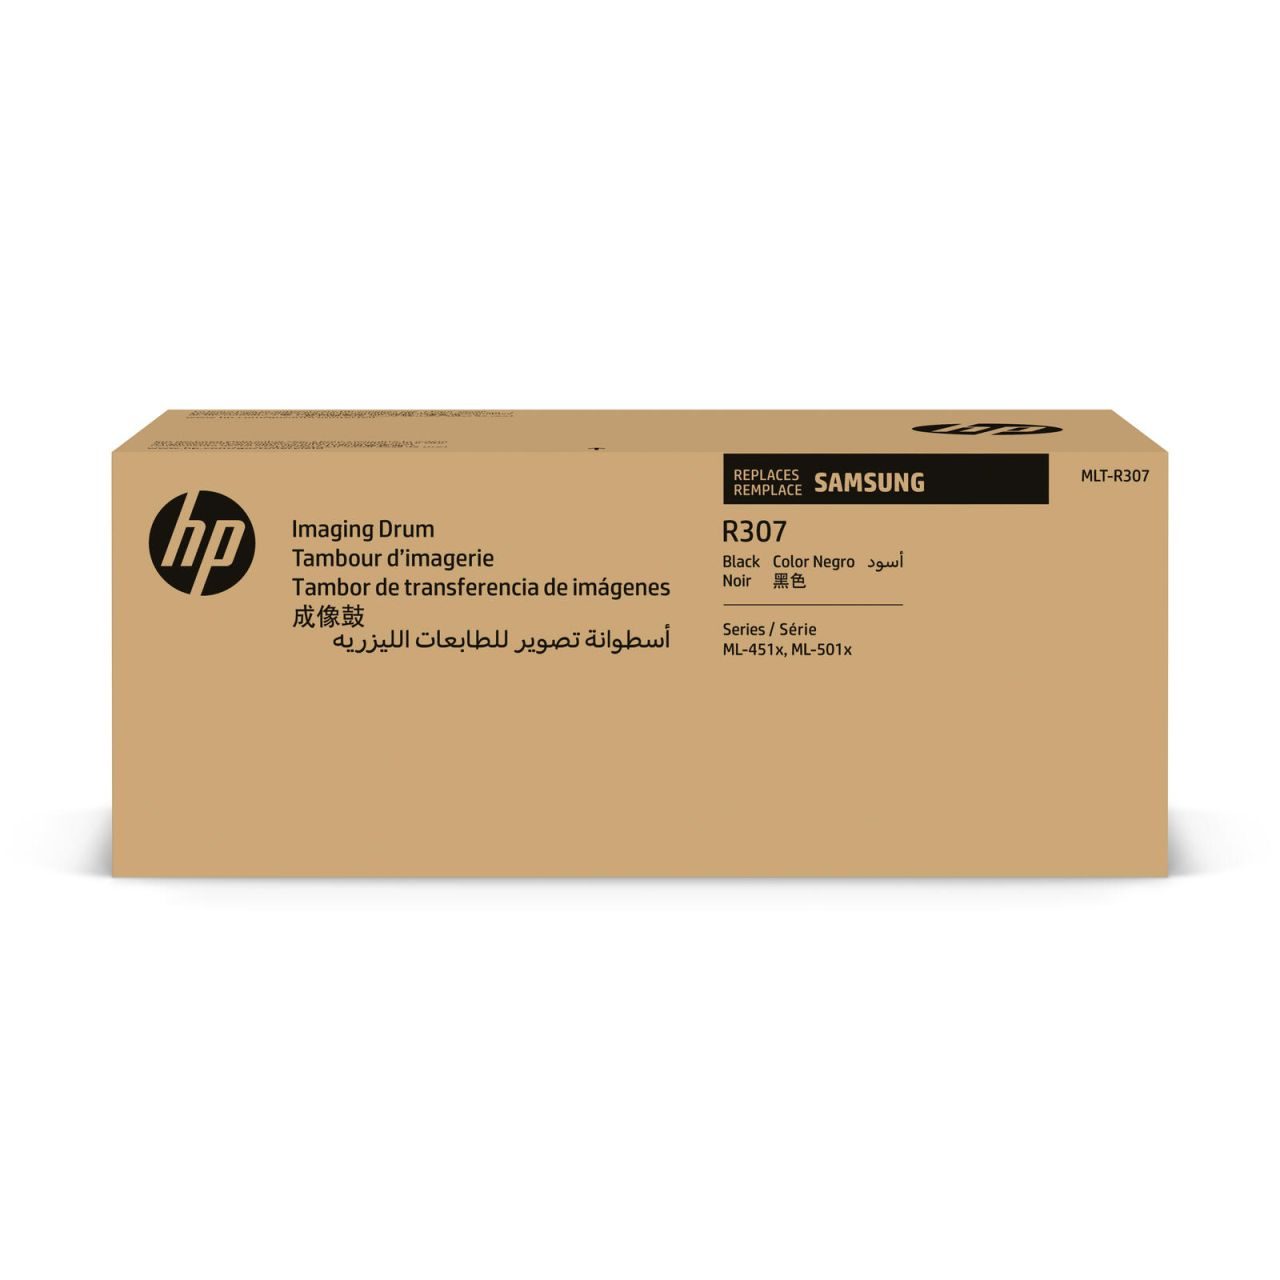 HP Original MLT-R307 Trommeleinheit 60.000 Seiten (MLT-R307/SEE) für ML-4510ND, 5010ND, 5015ND